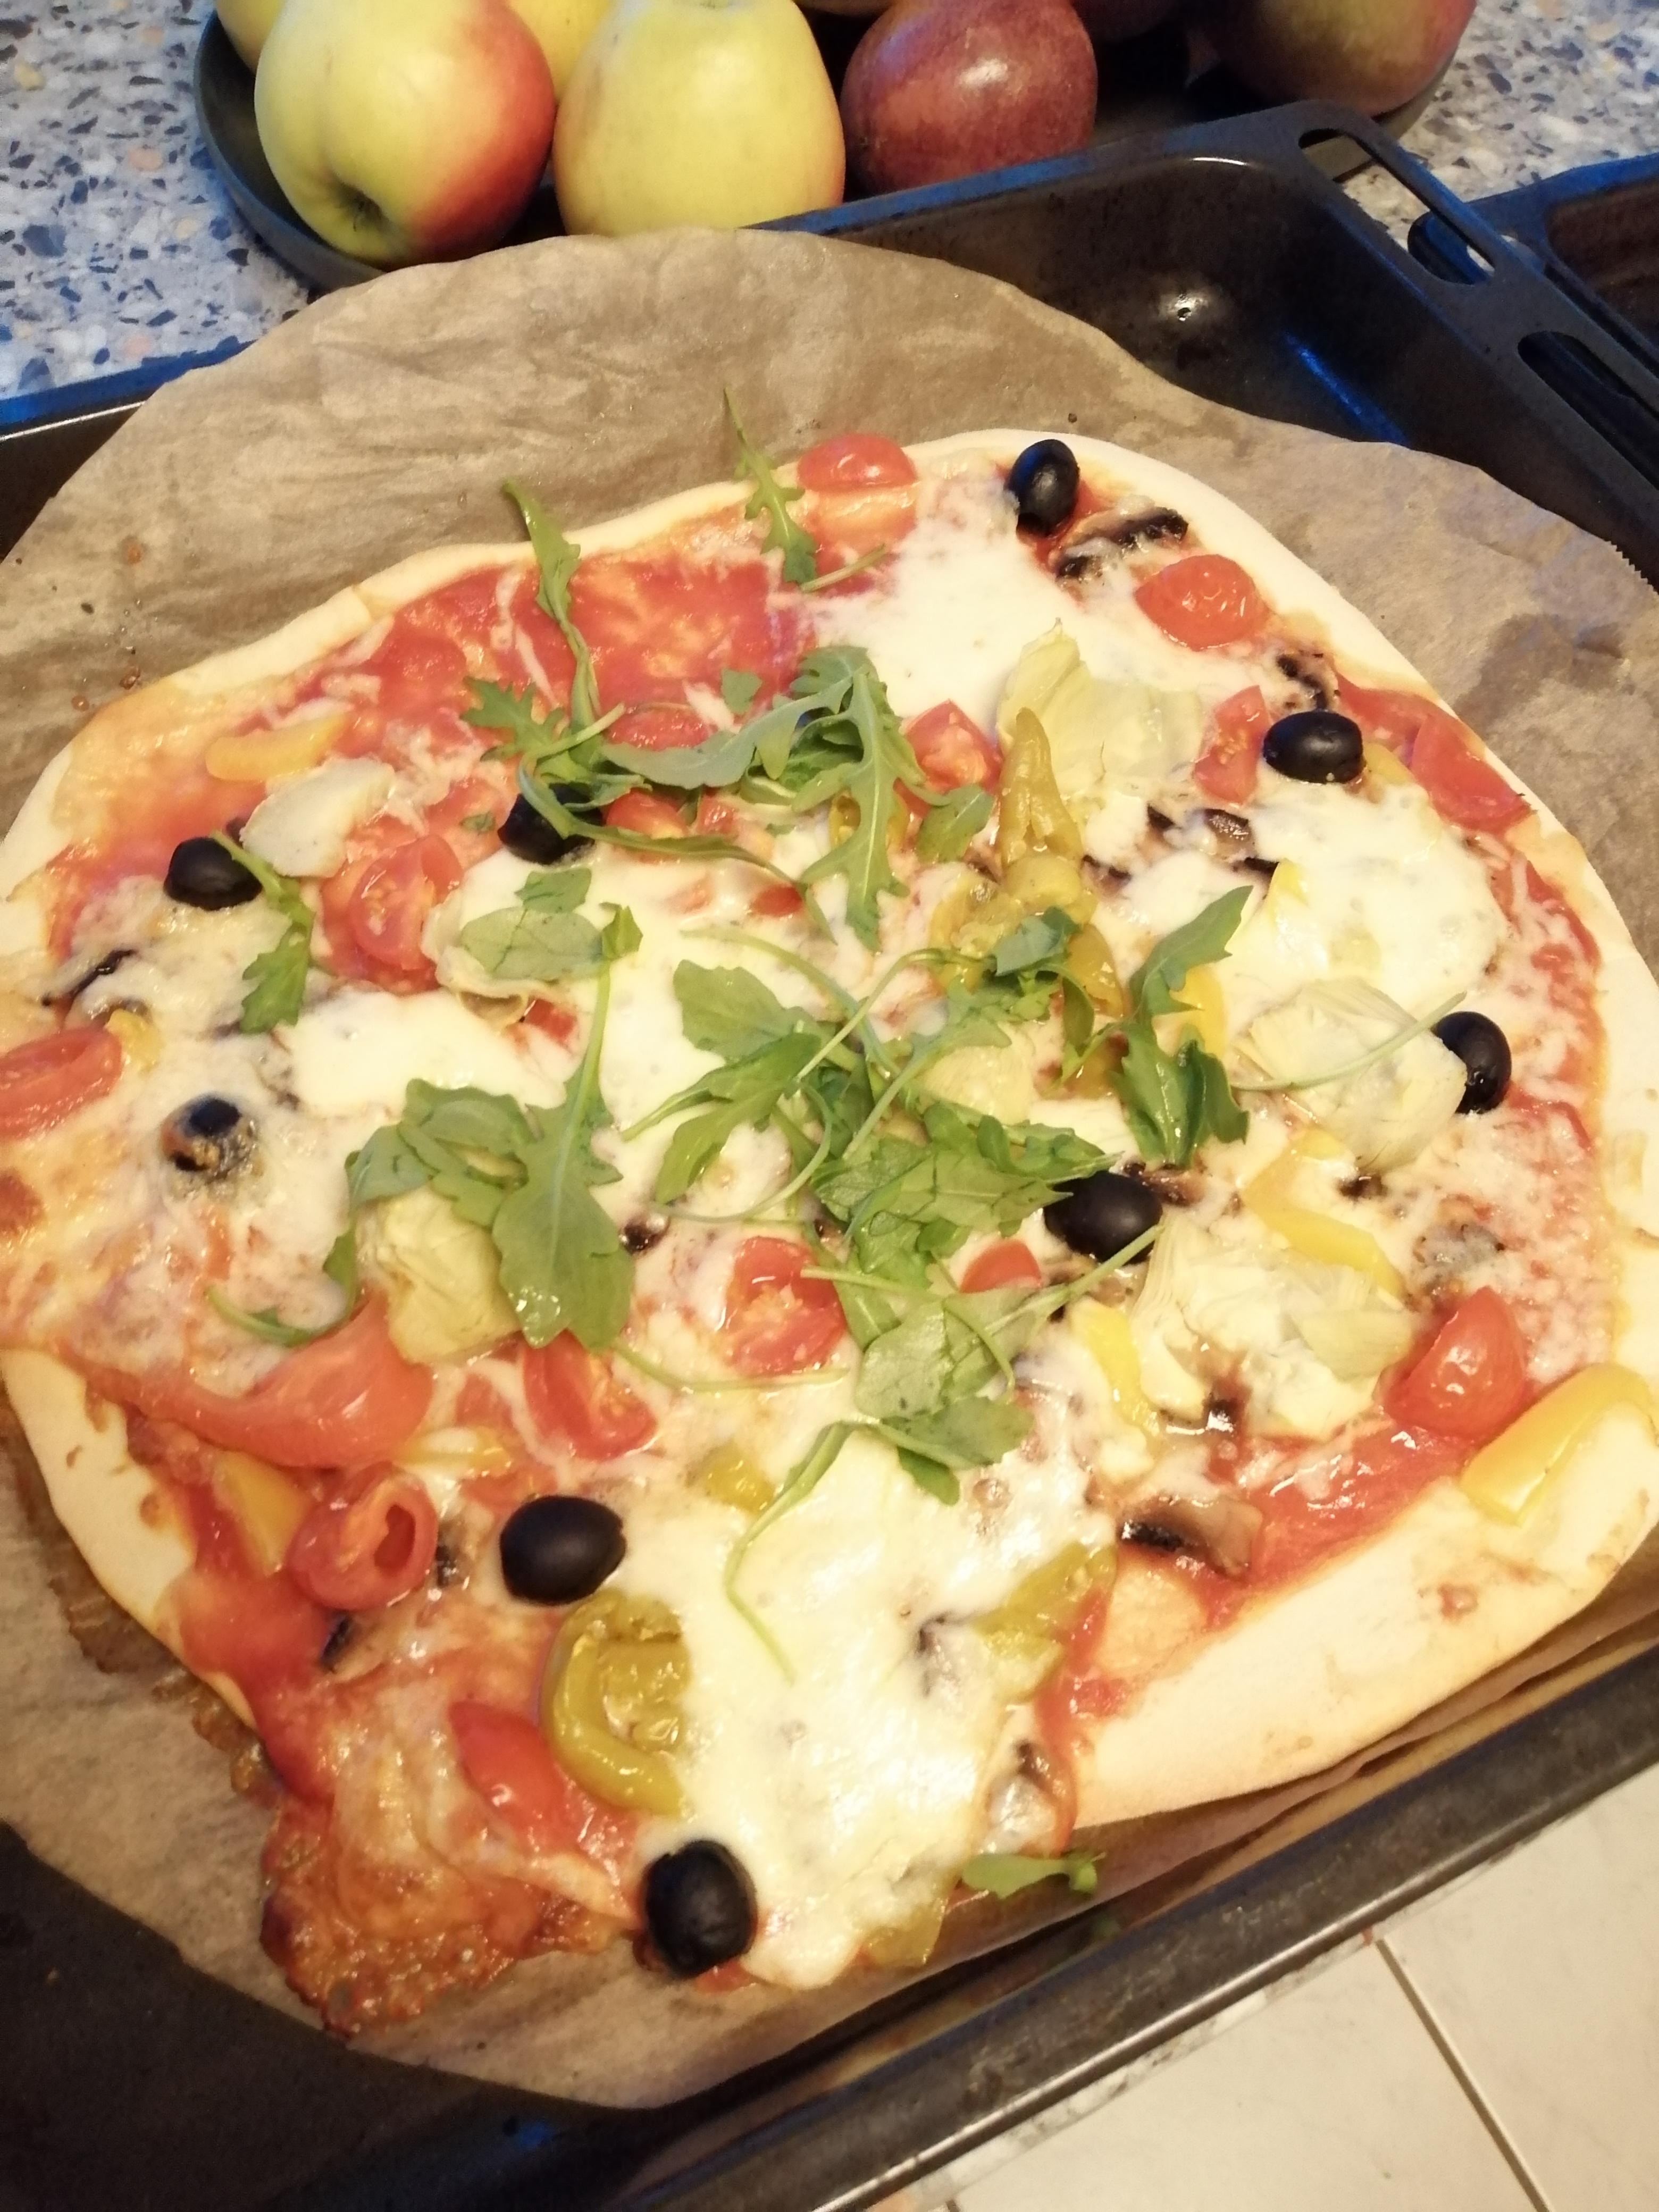 #italia #lecker
#pizza